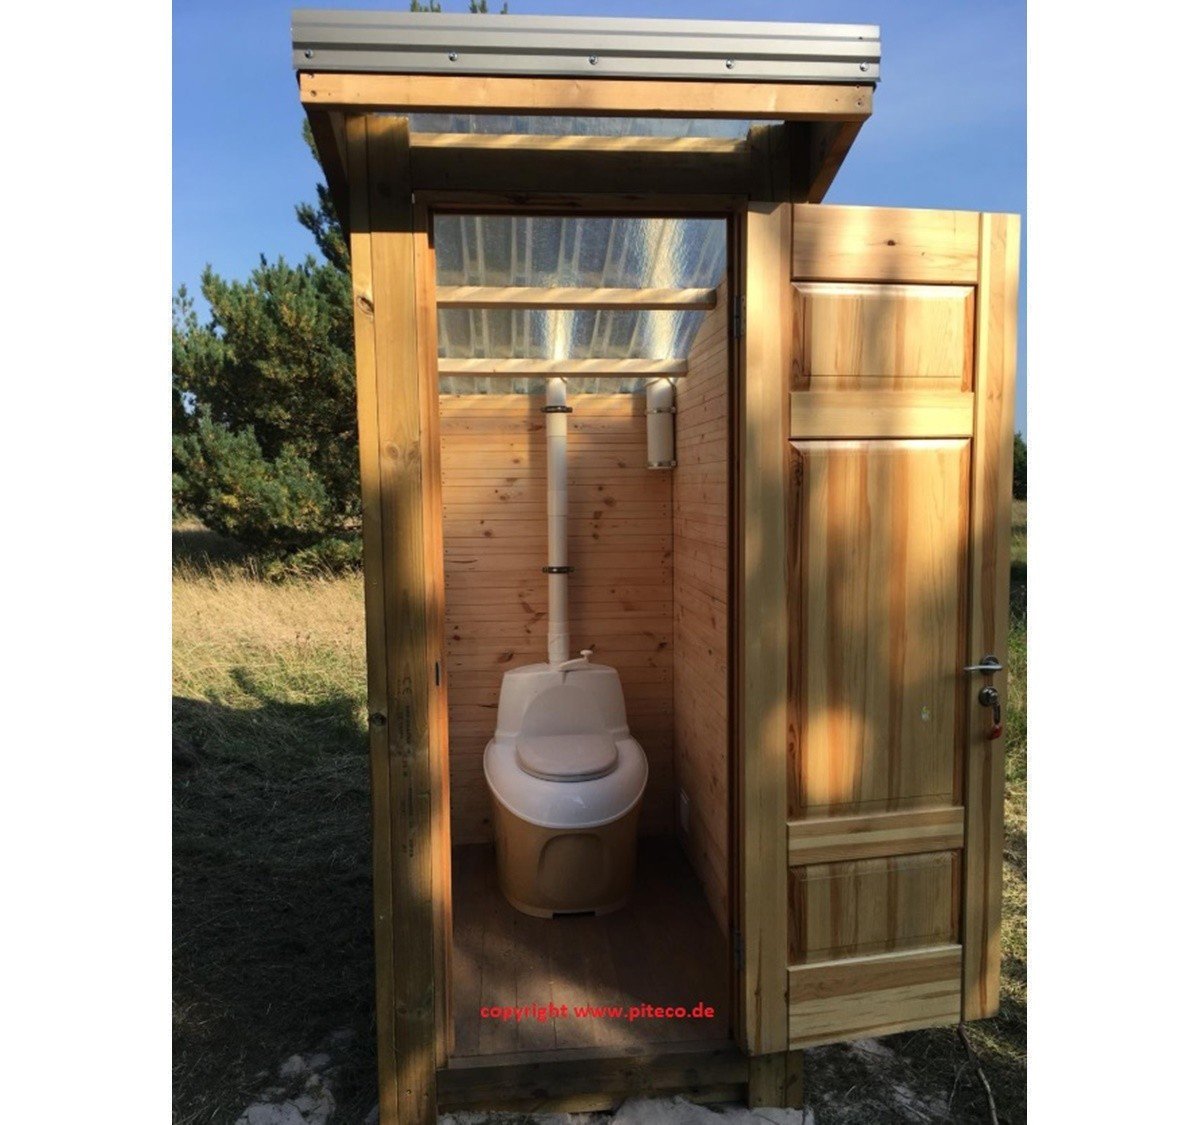 Какой лучше дачный туалет. Пудр-клозет торфяной туалет. Деревянная кабина для туалета питеко 506. Биотуалет компостный. Туалет дачный пудрколозет.